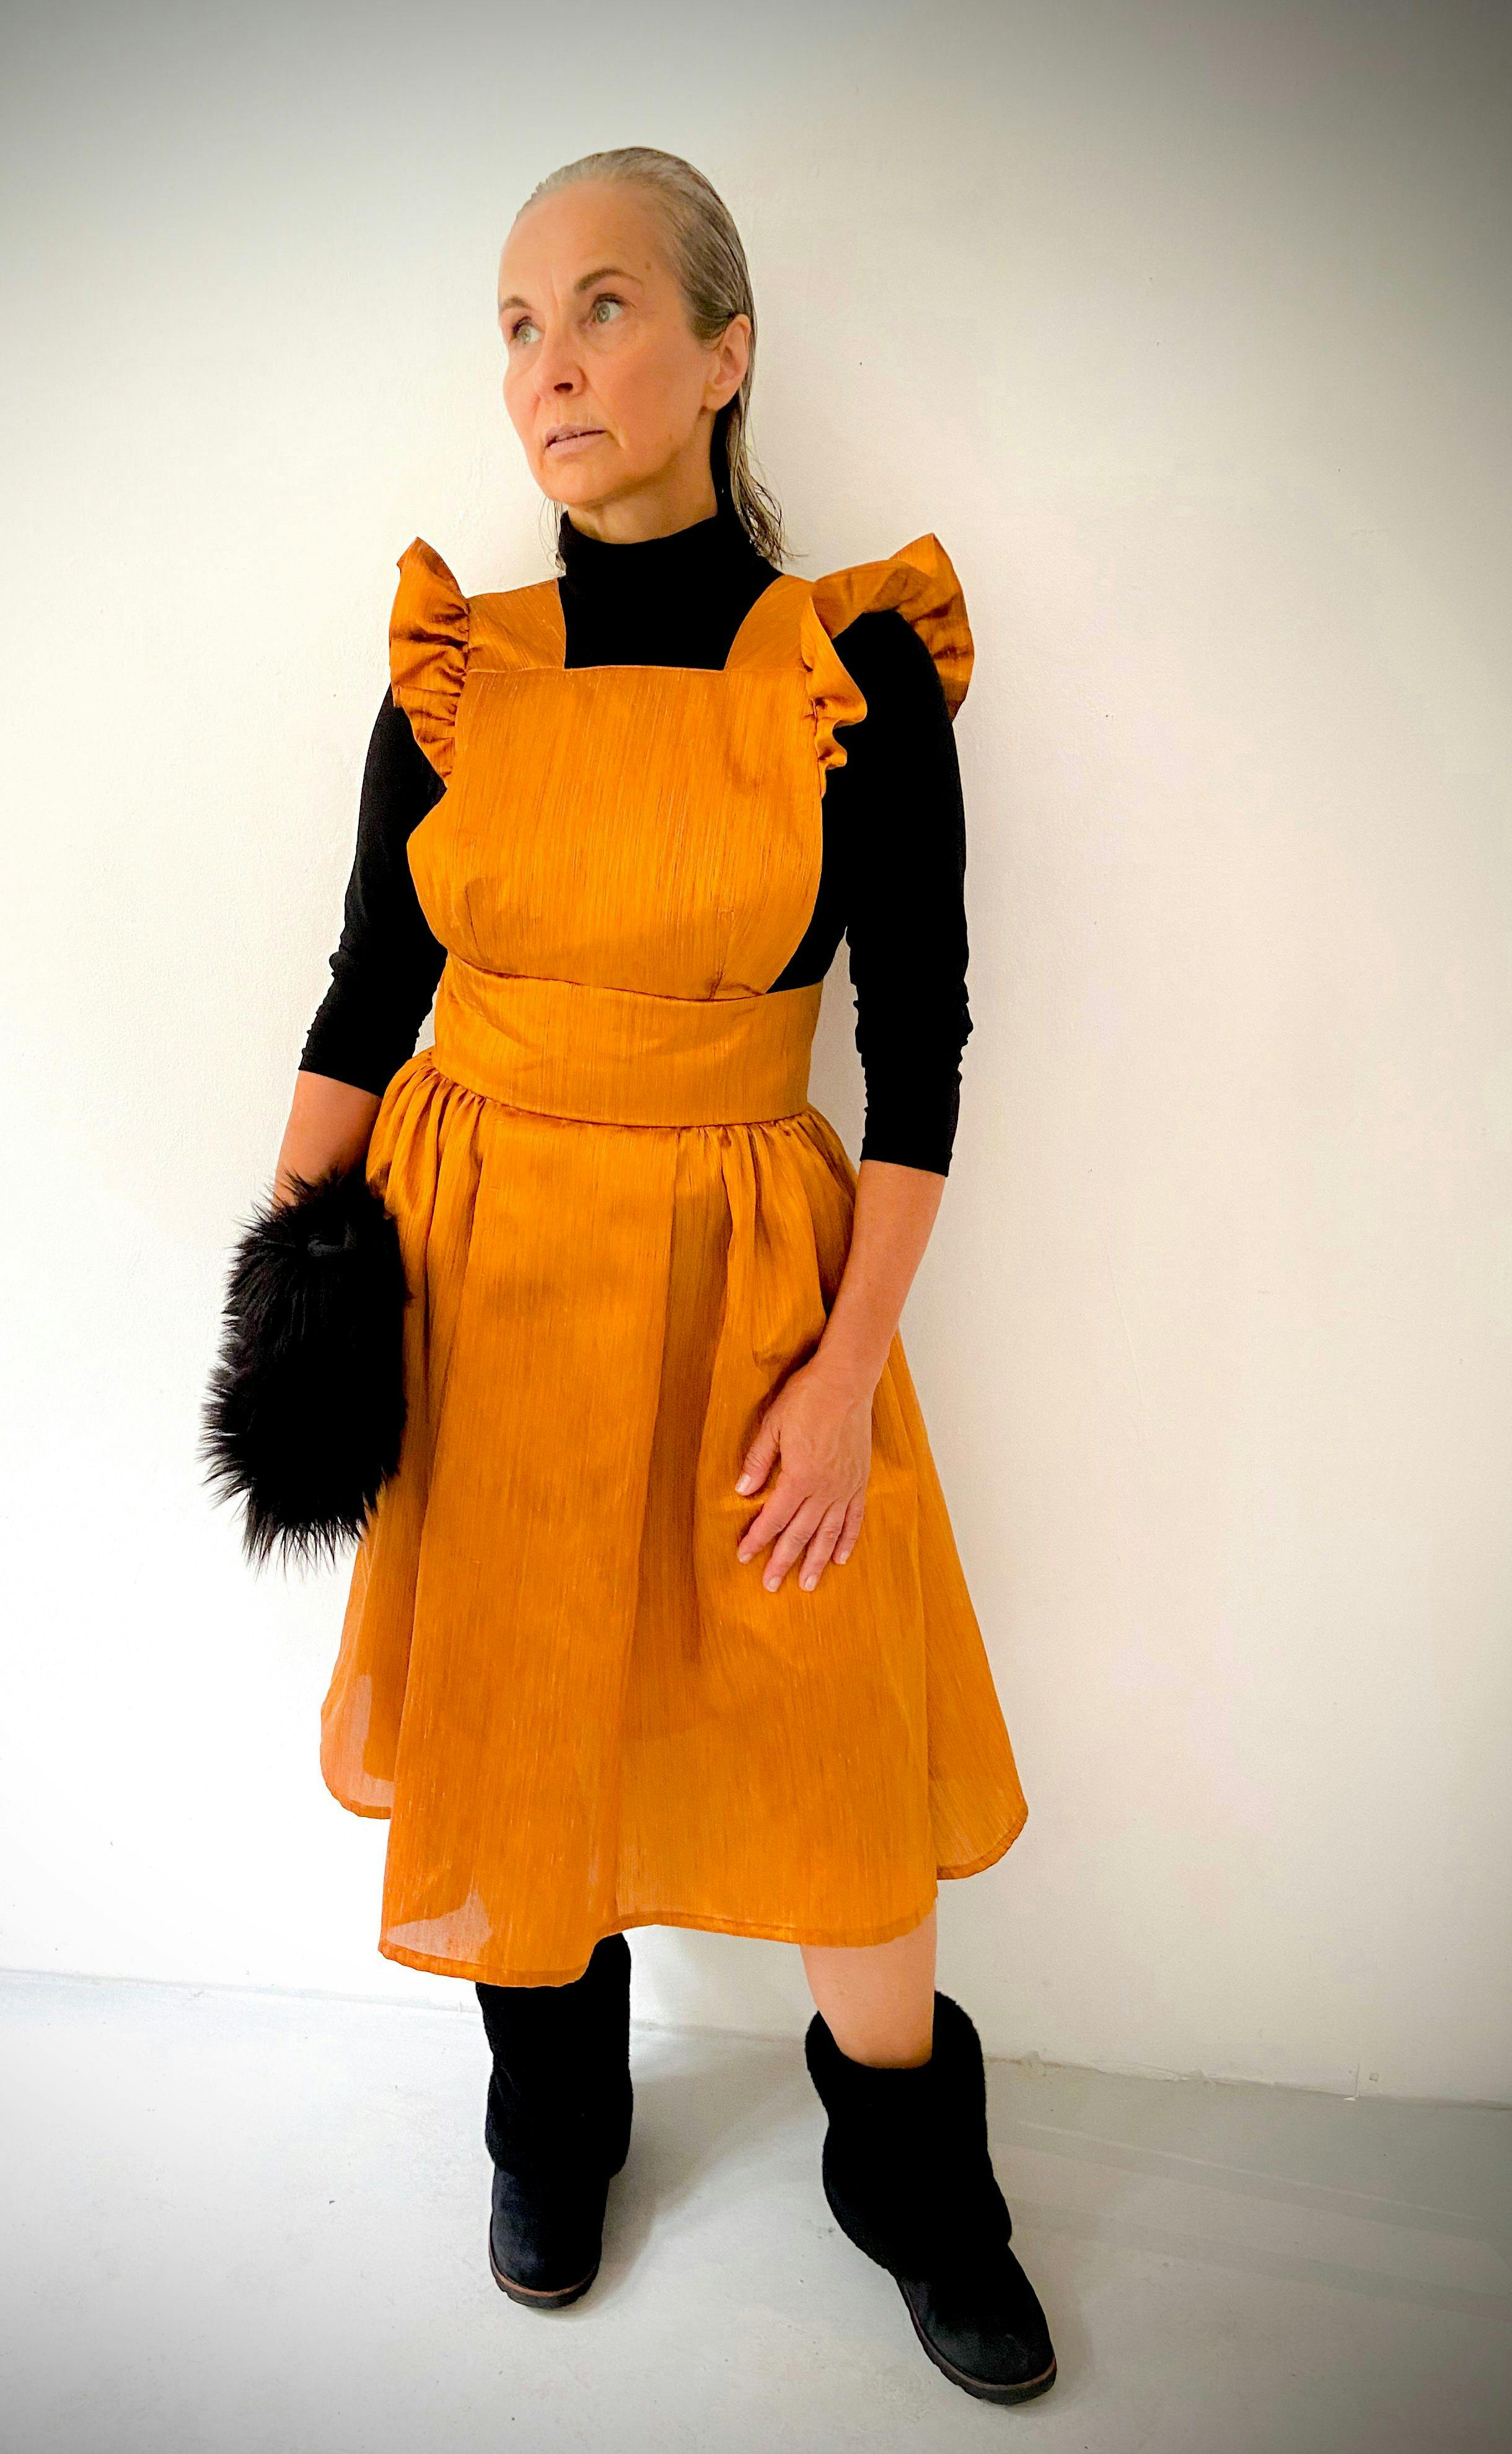 Vintage Style Apron Dress / Shiny Orange